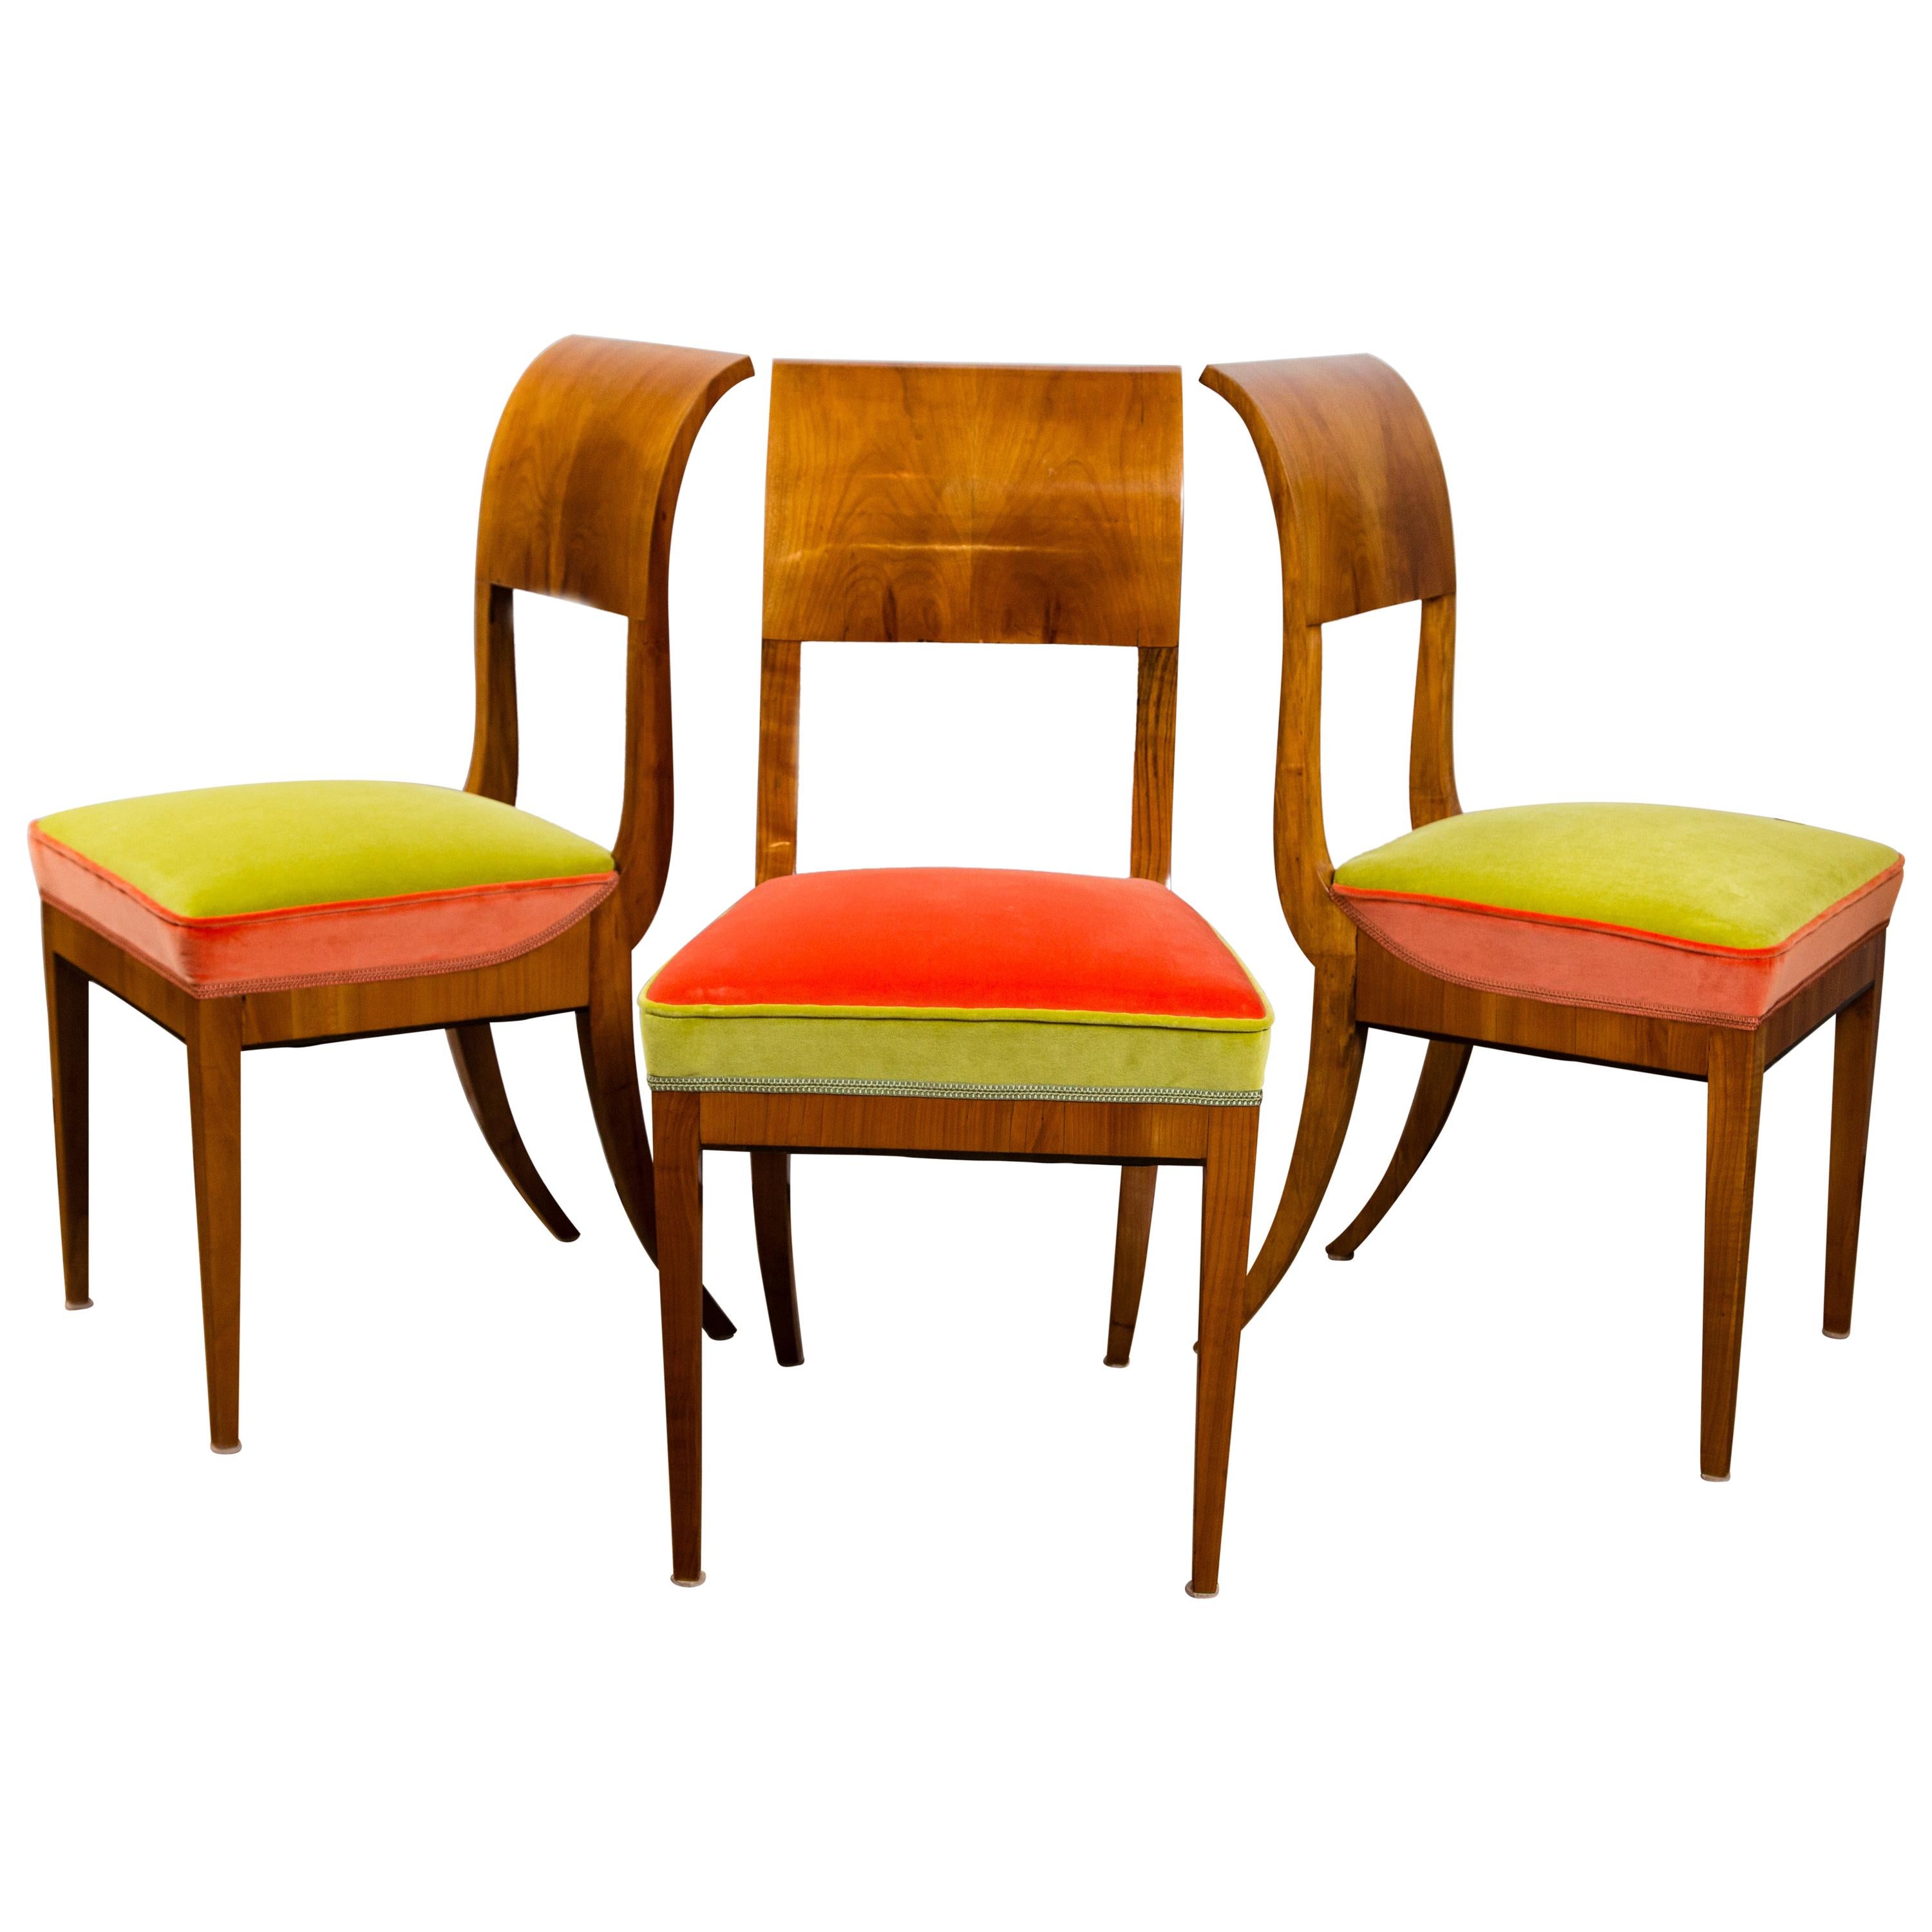 Neoklassizistische Biedermeier-Beistellstühle, 3 verfügbar